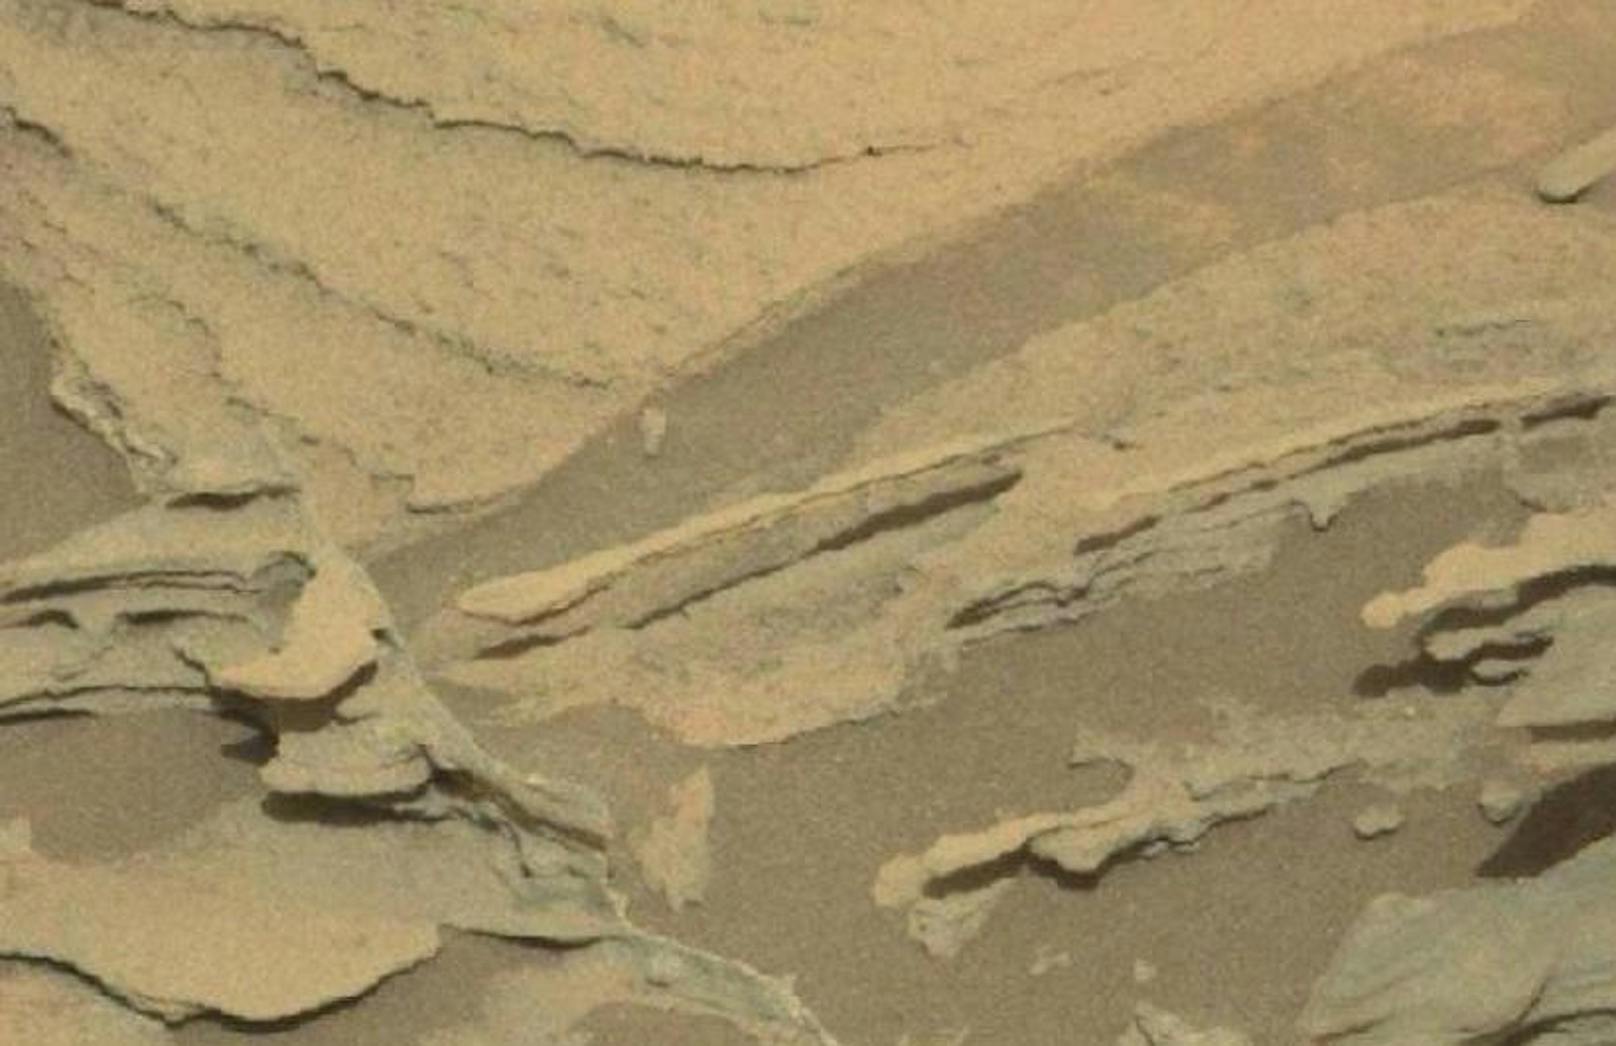 Dieses Bild warf die Frage auf, ob der Mars-Rover einen schwebenden Löffel entdeckt hatte.